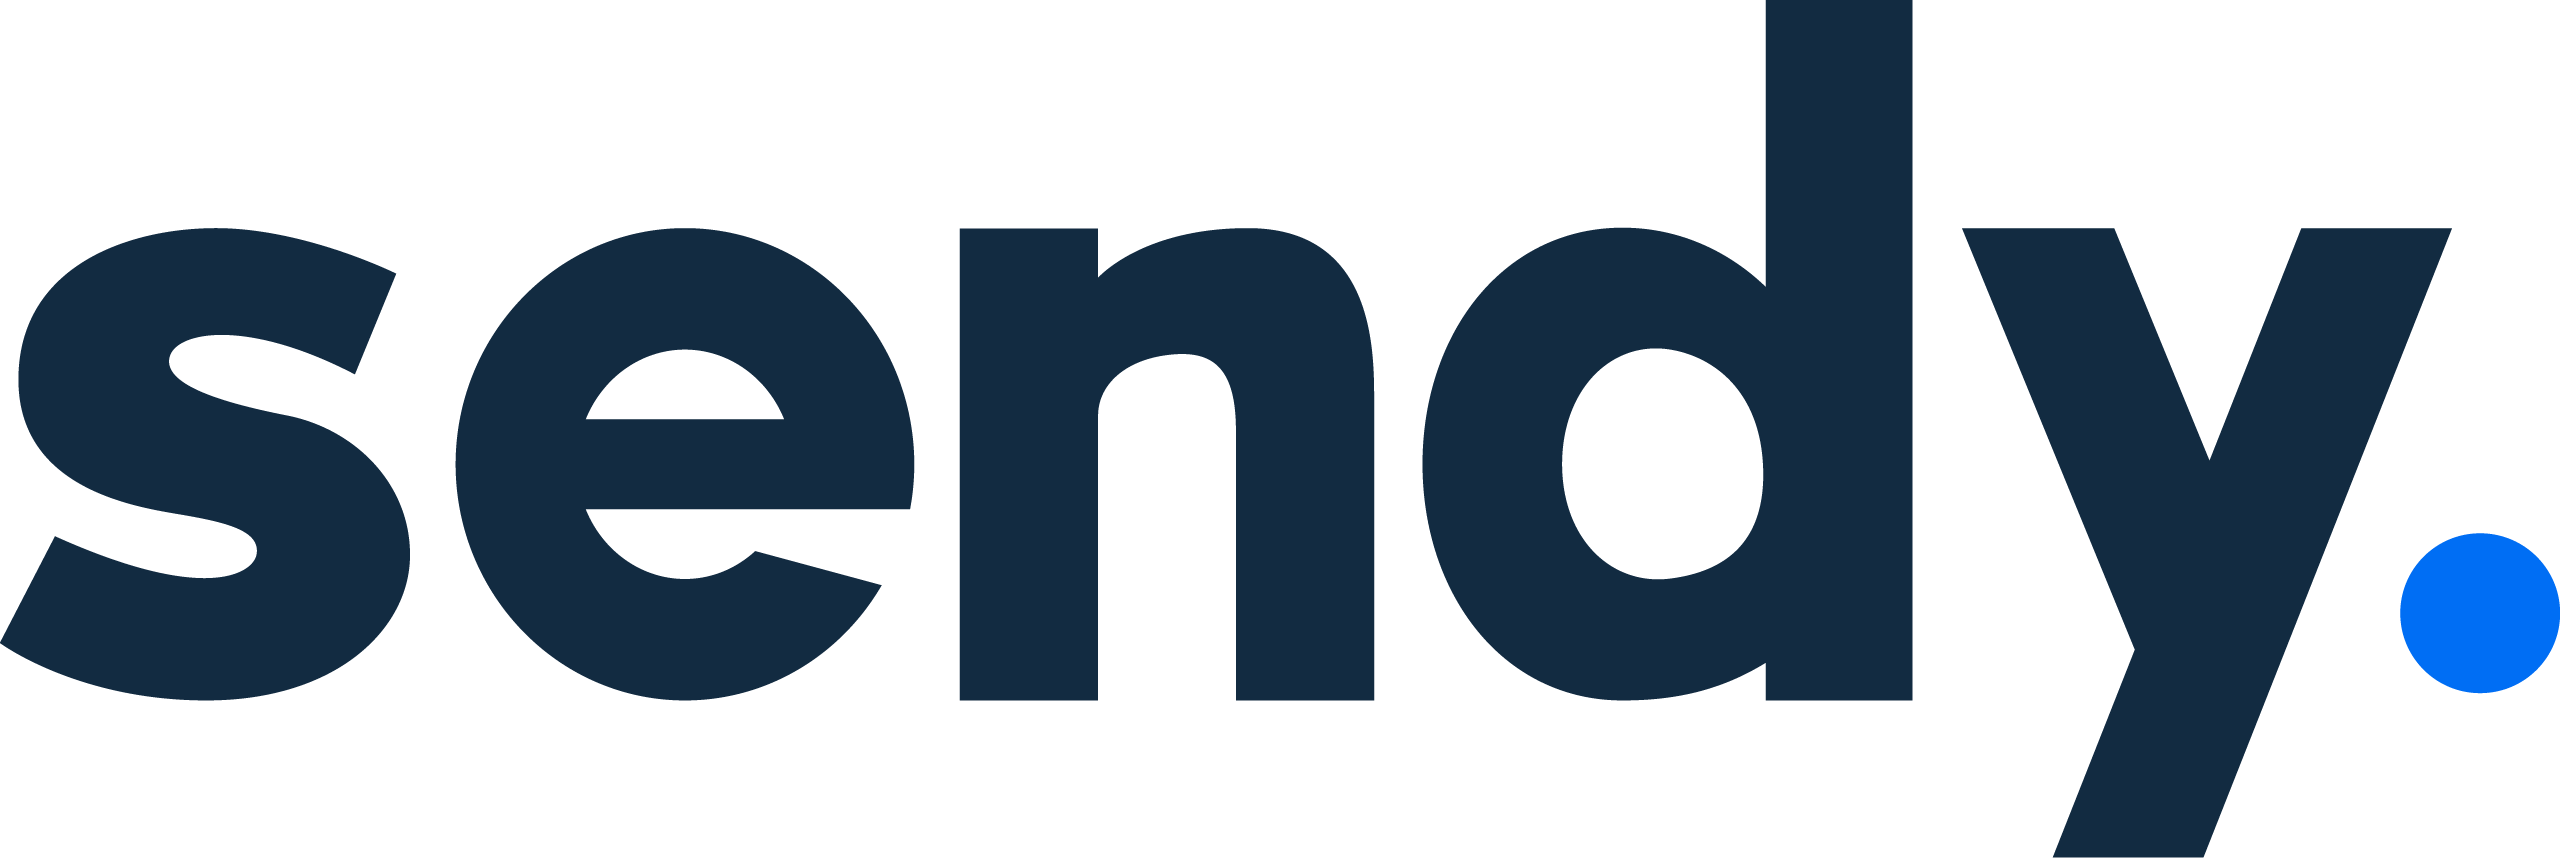 센디/ Sendy Logo